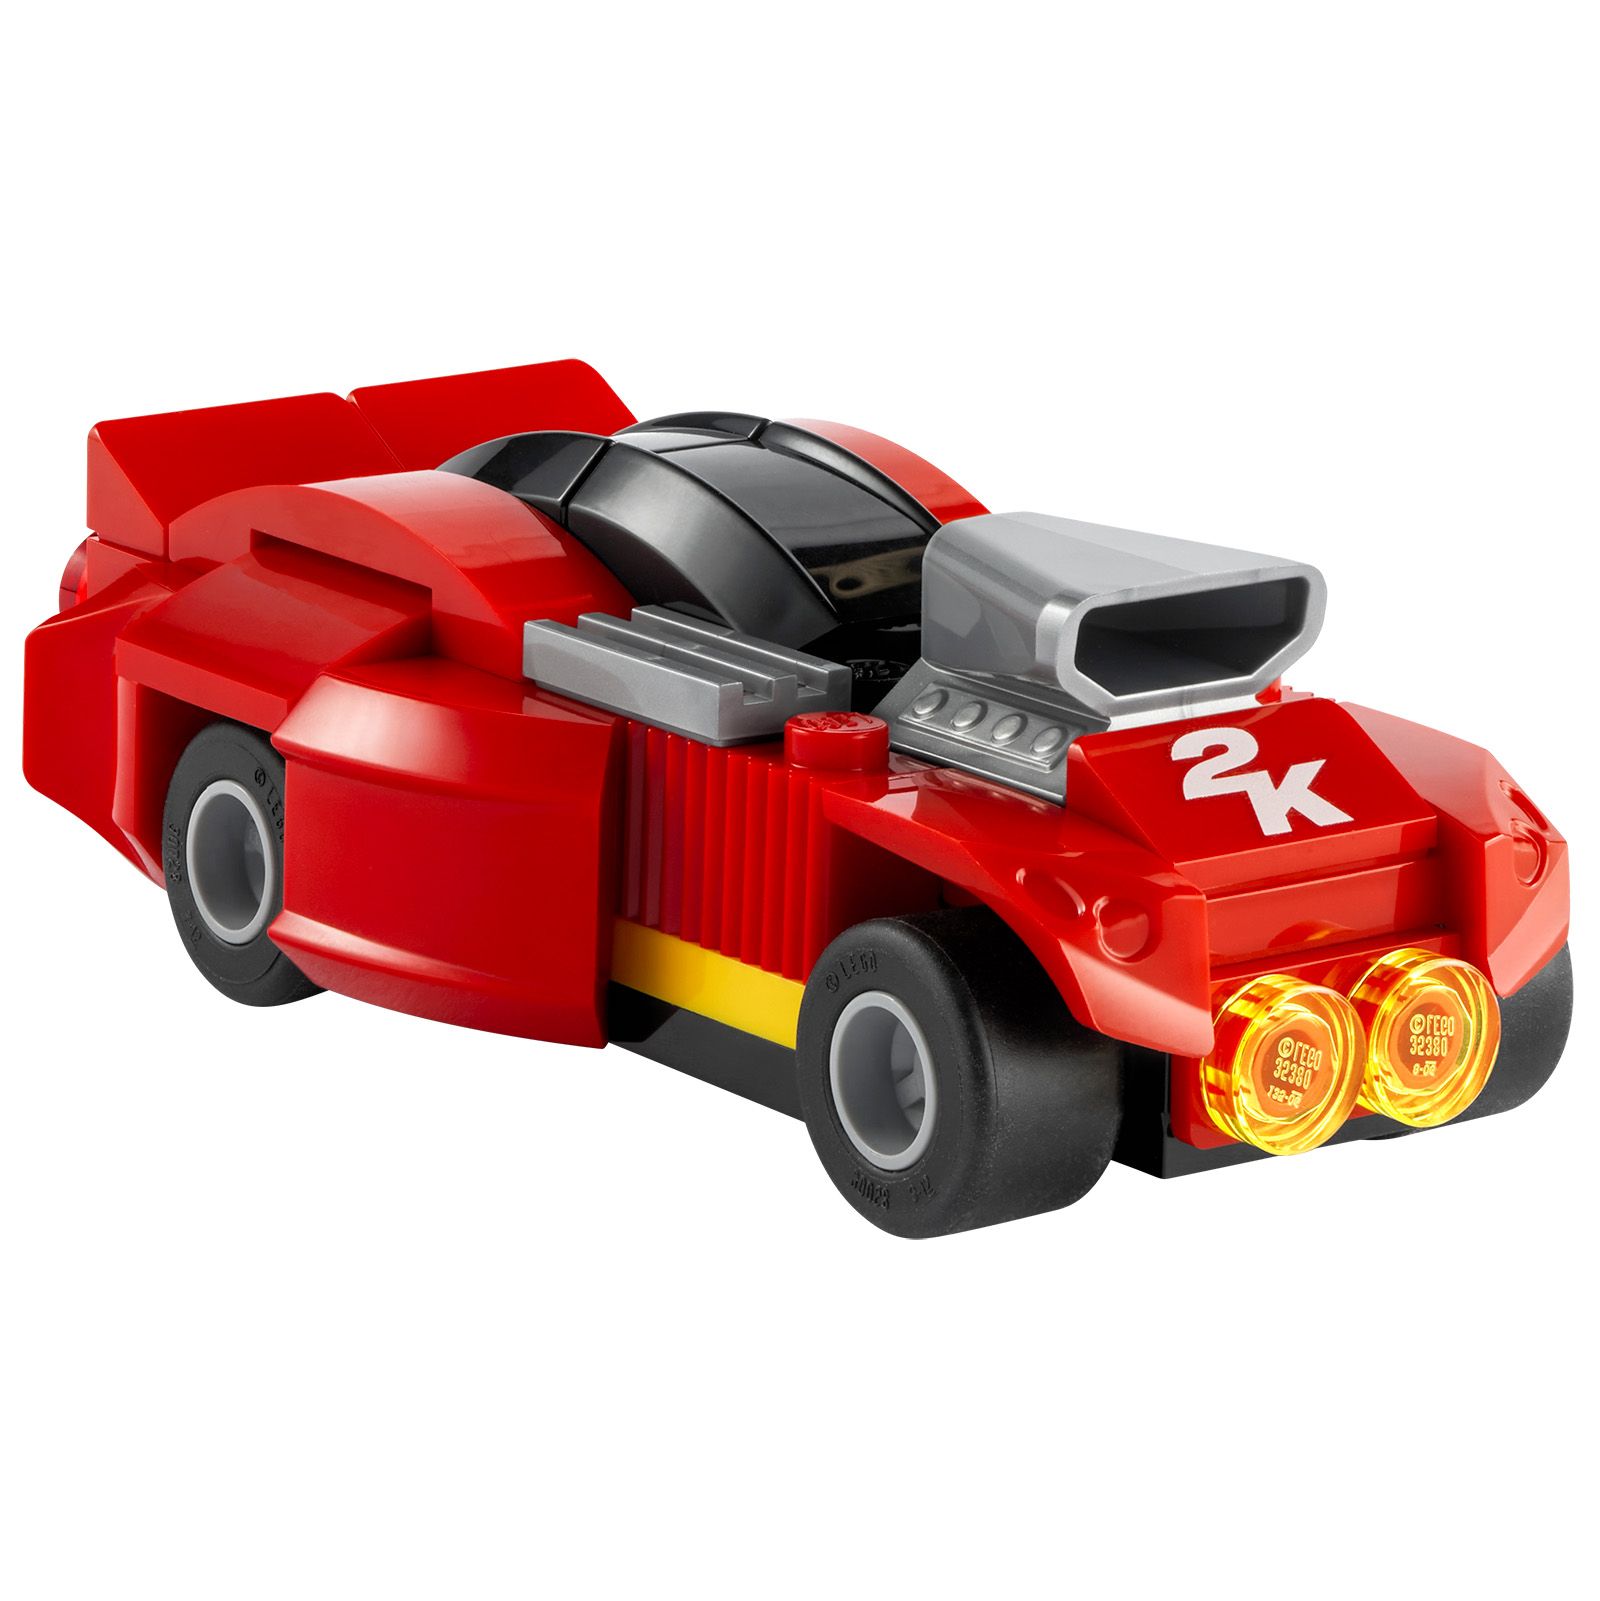 LEGO 2K Drive: isang trailer at isang produktong LEGO na inaalok kasama ng ilang partikular na bersyon ng video game